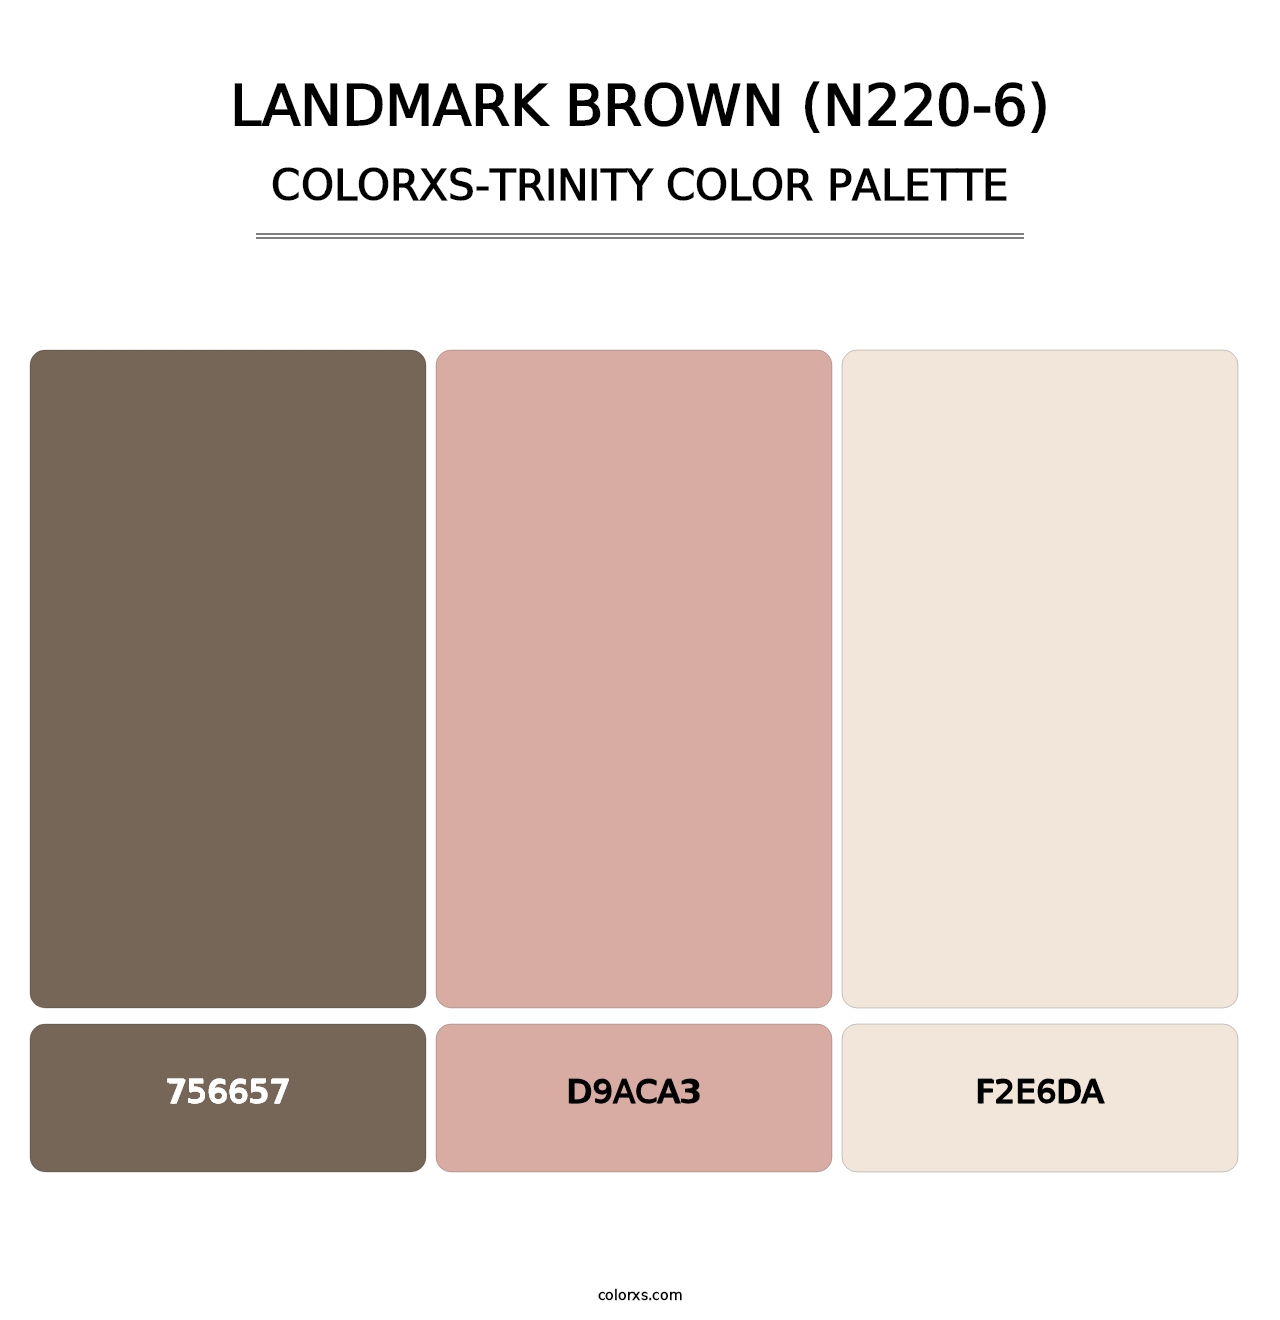 Landmark Brown (N220-6) - Colorxs Trinity Palette